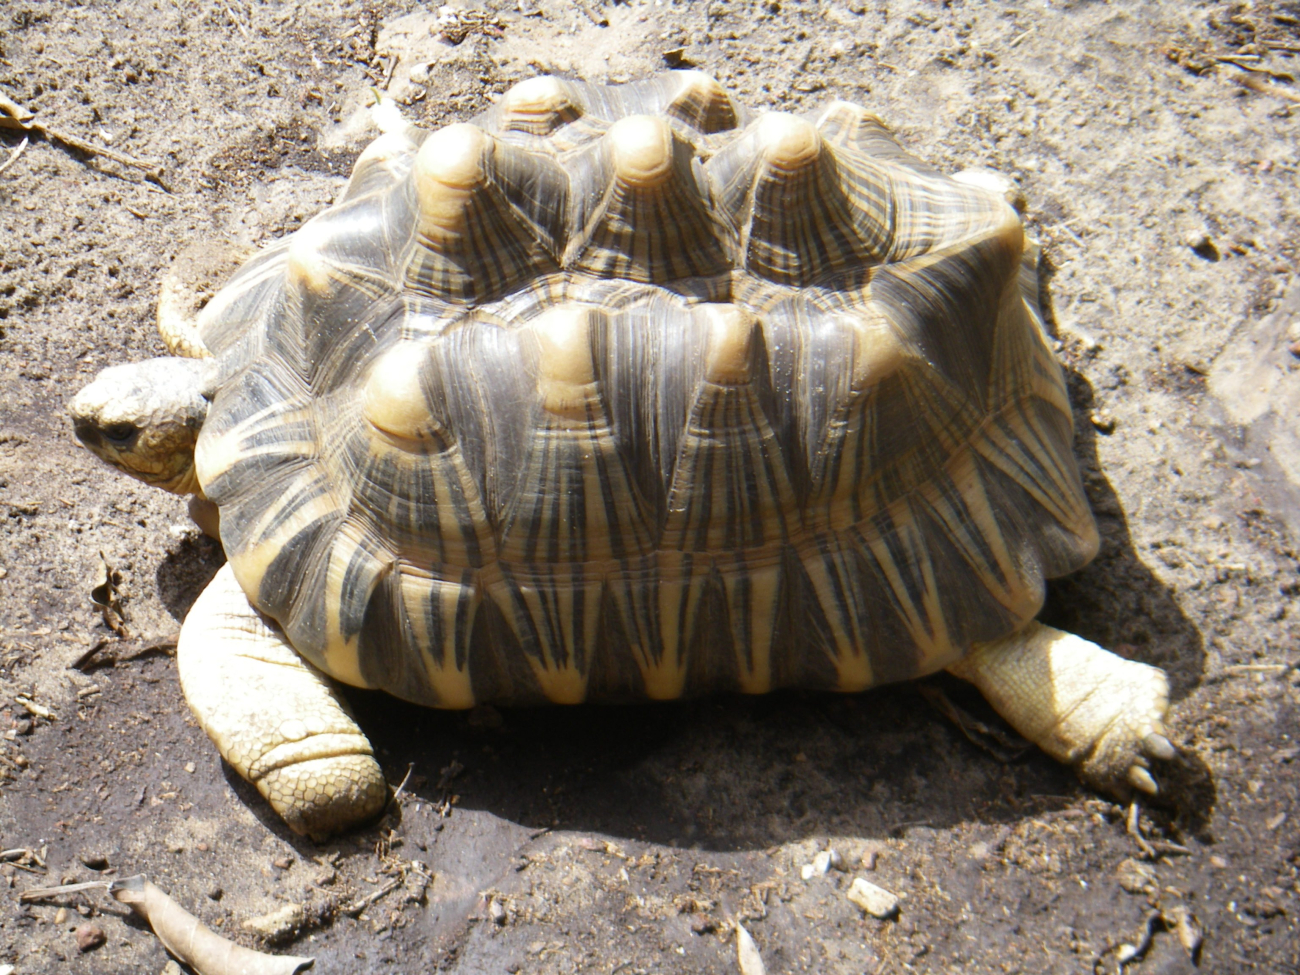 A sulcata tortoise (Geochelone sulcata) , a land-dwelling reptile nativeto Northern Africa